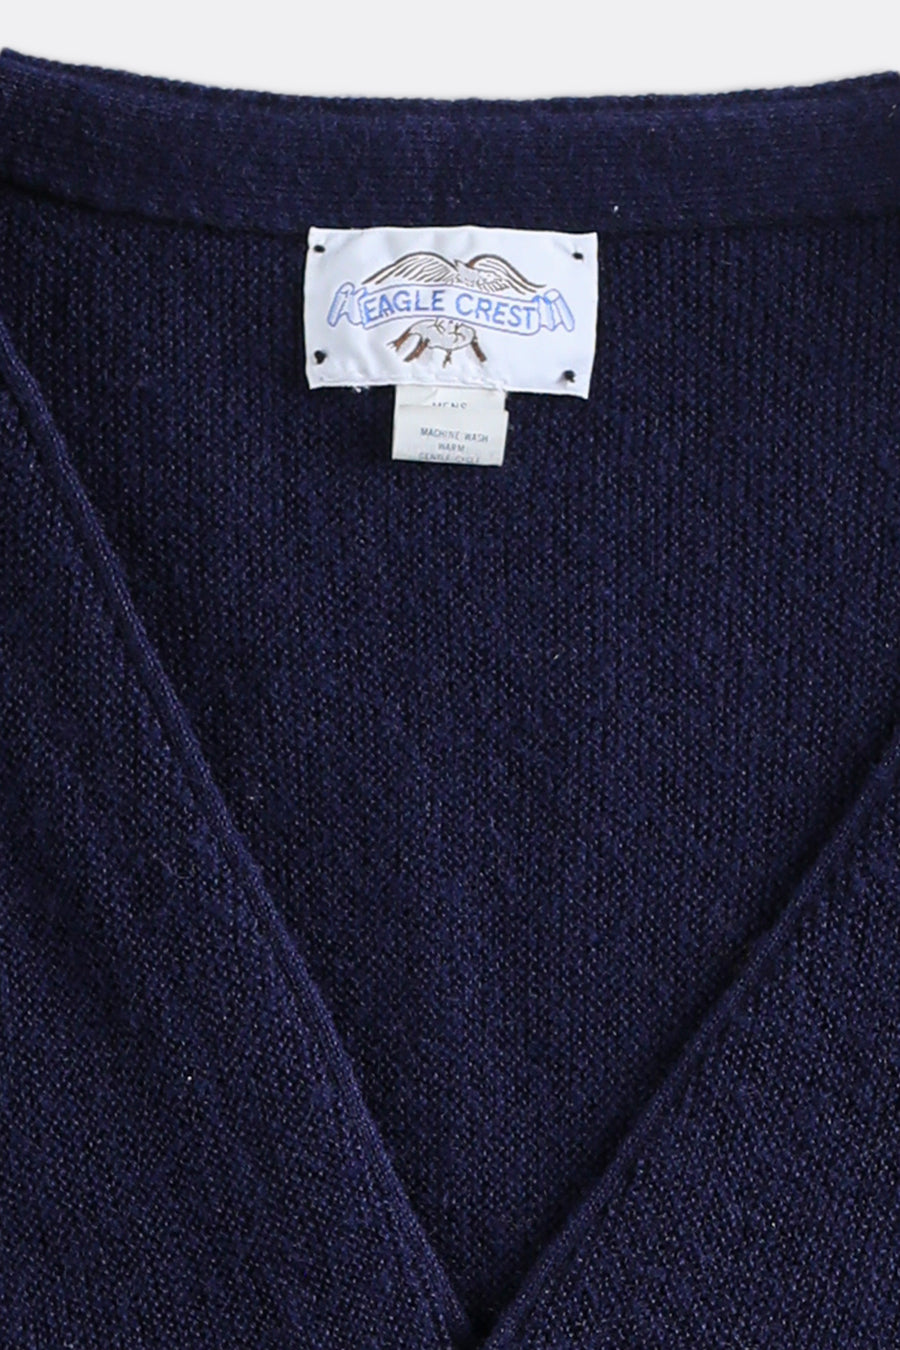 Vintage Eagle Crest Knit Cardigan